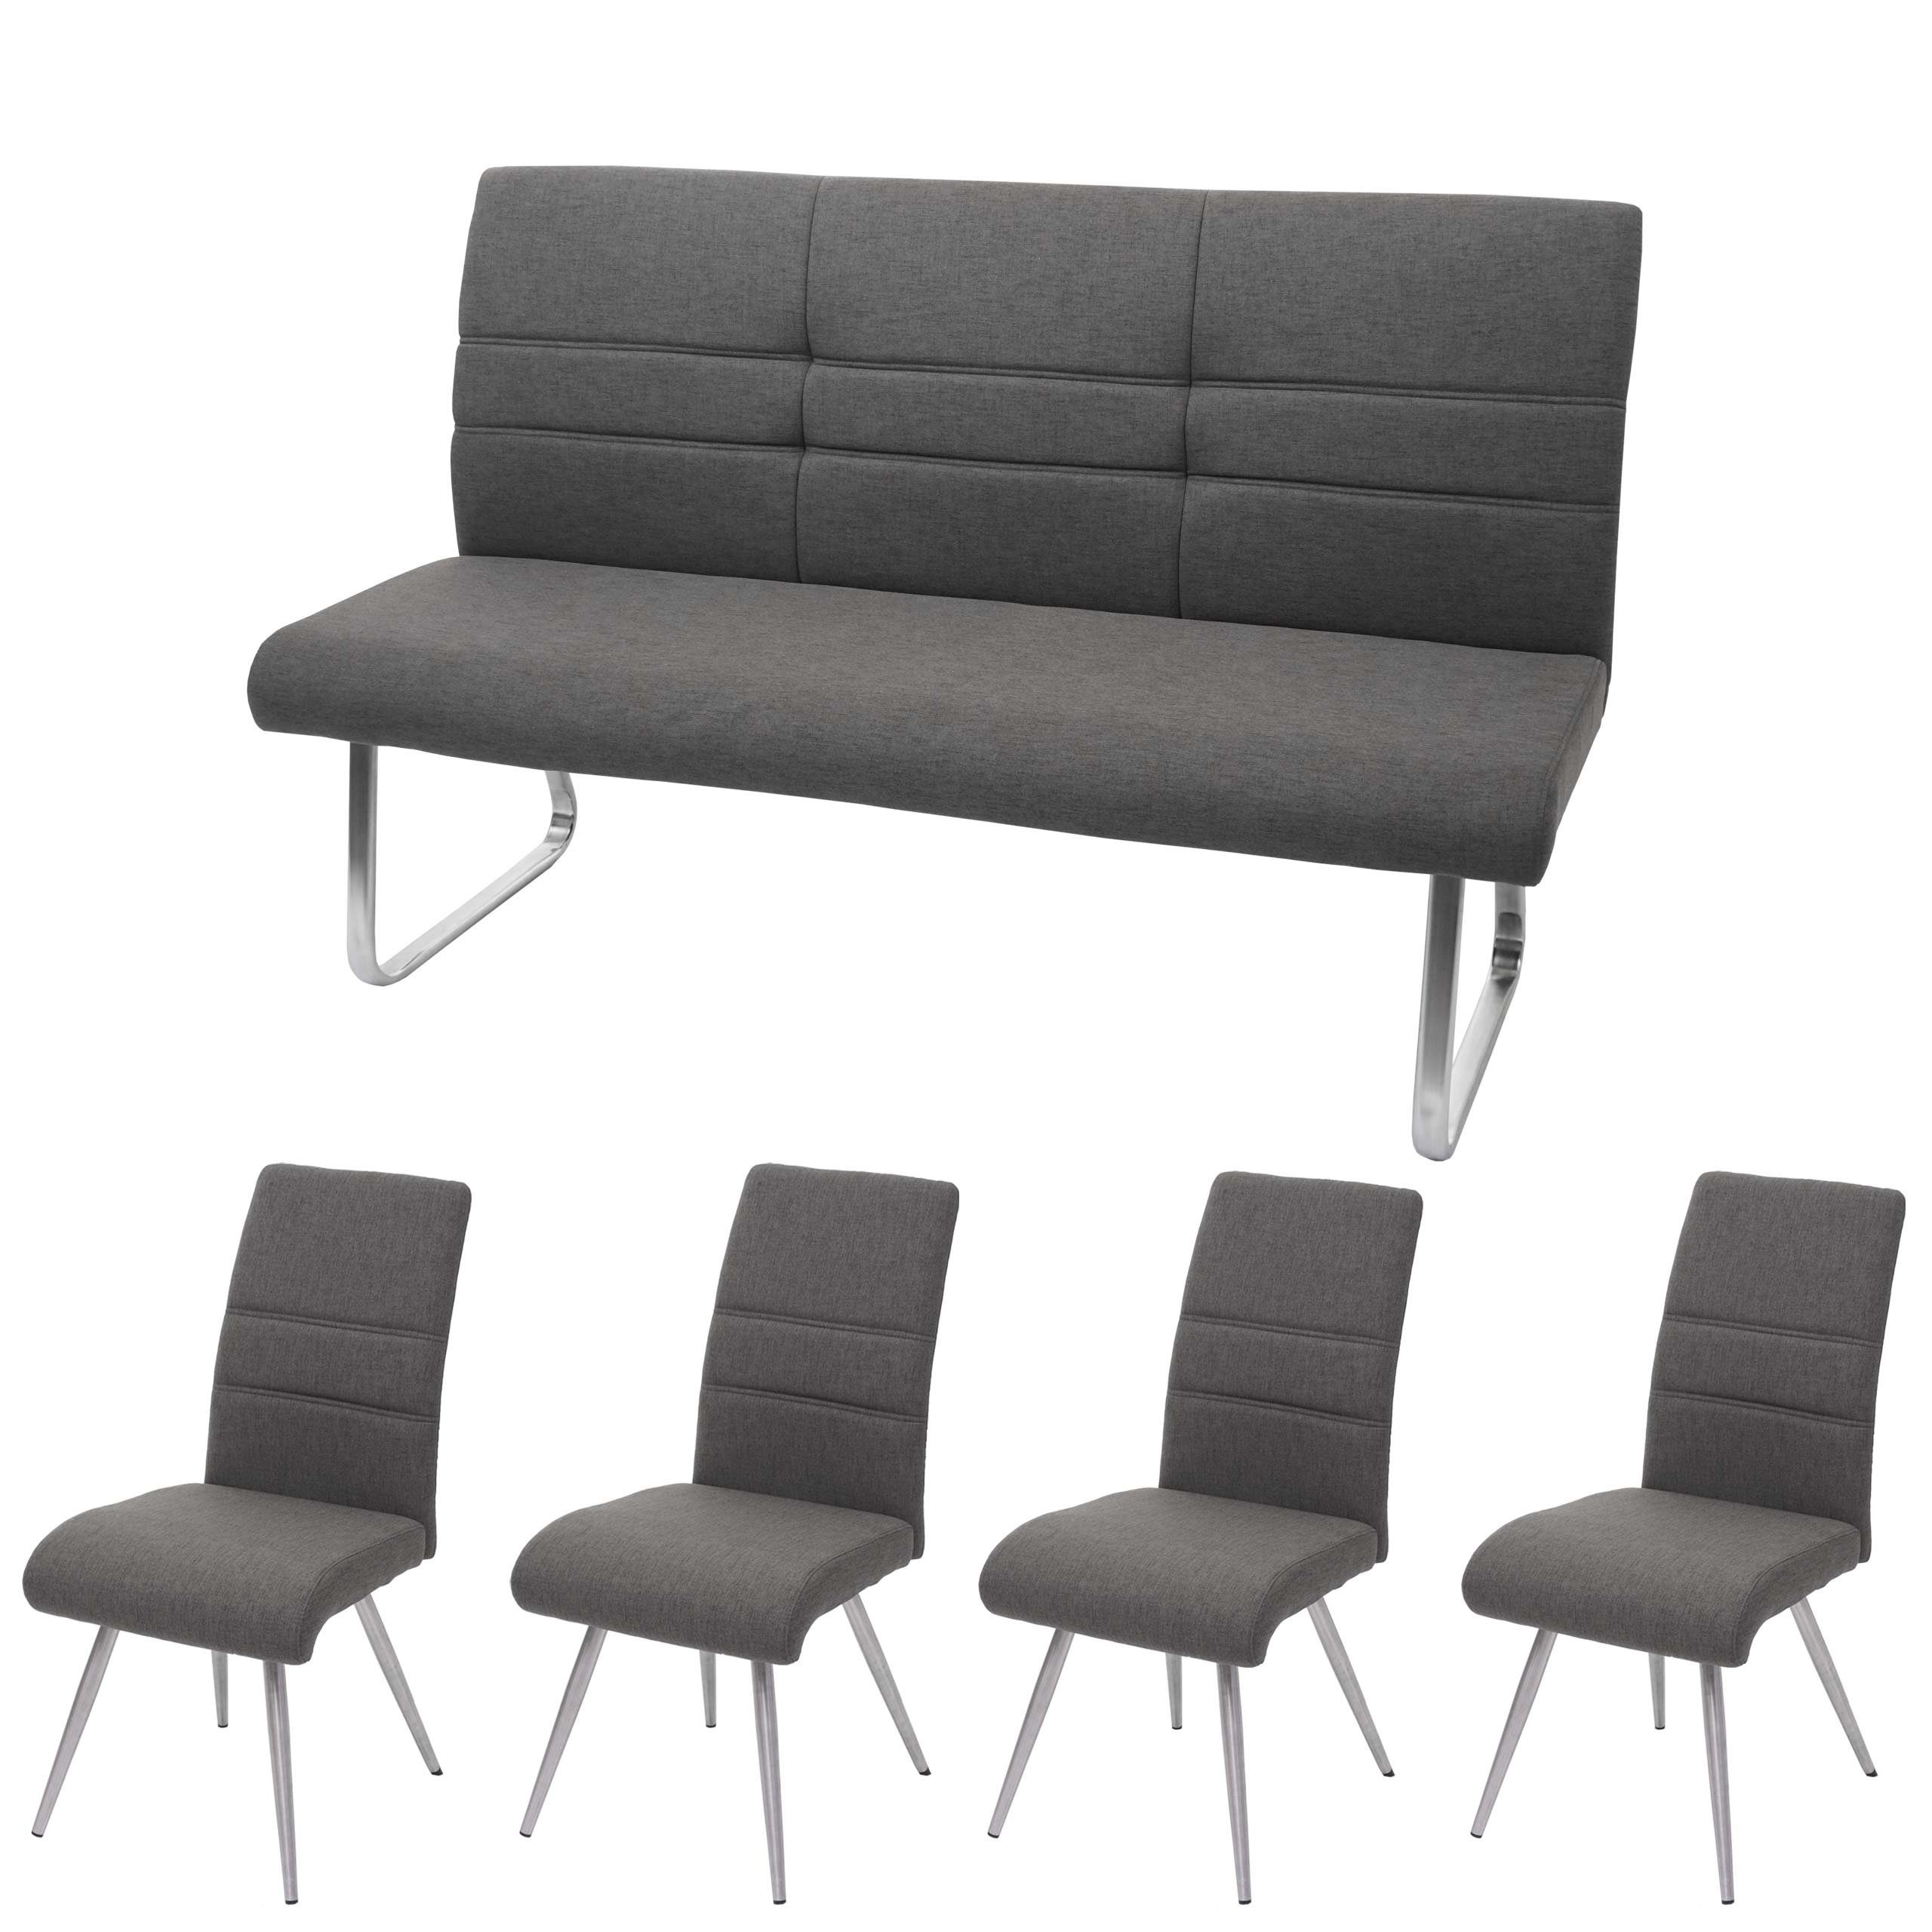 MCW Esszimmerstuhl MCW-G55-2 (Stühle ohne Armlehne, 4 St), 4er-Set, inklusive 3-Sitzer Bank, abgerundete Ecken, Fußbodenschoner